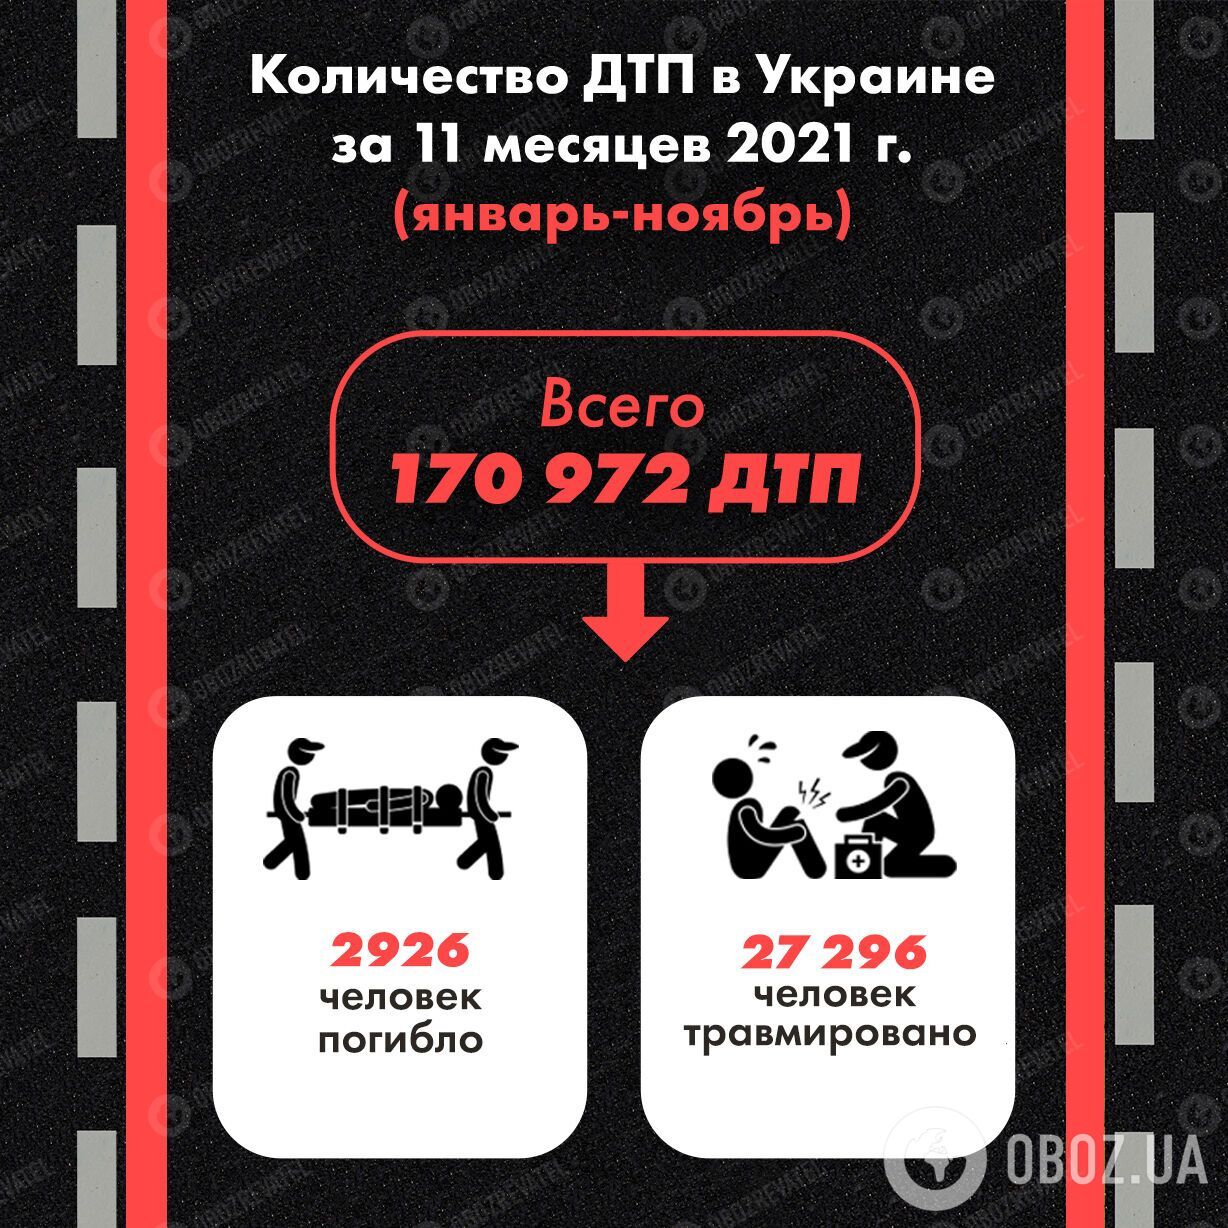 Количество ДТП в Украине за 11 месяцев 2021 года